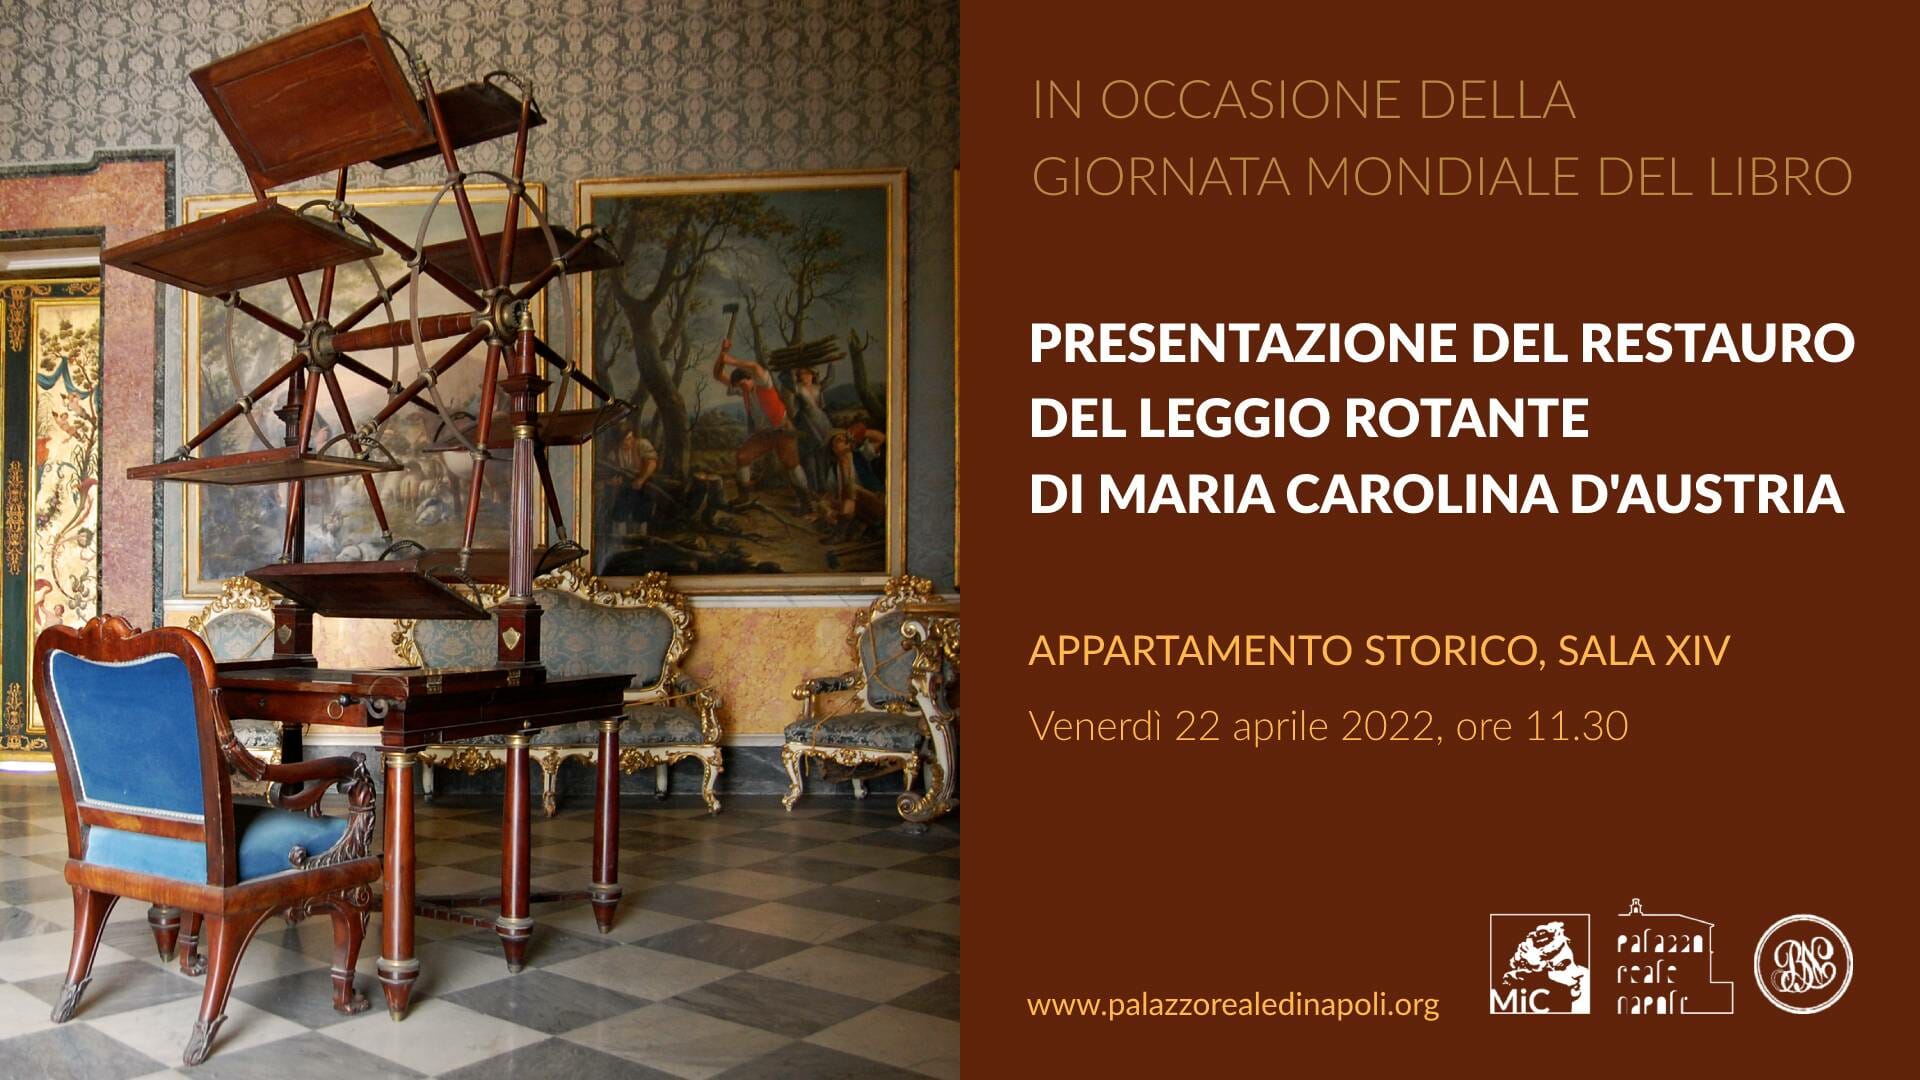 Giornata mondiale del libro al Palazzo Reale di Napoli